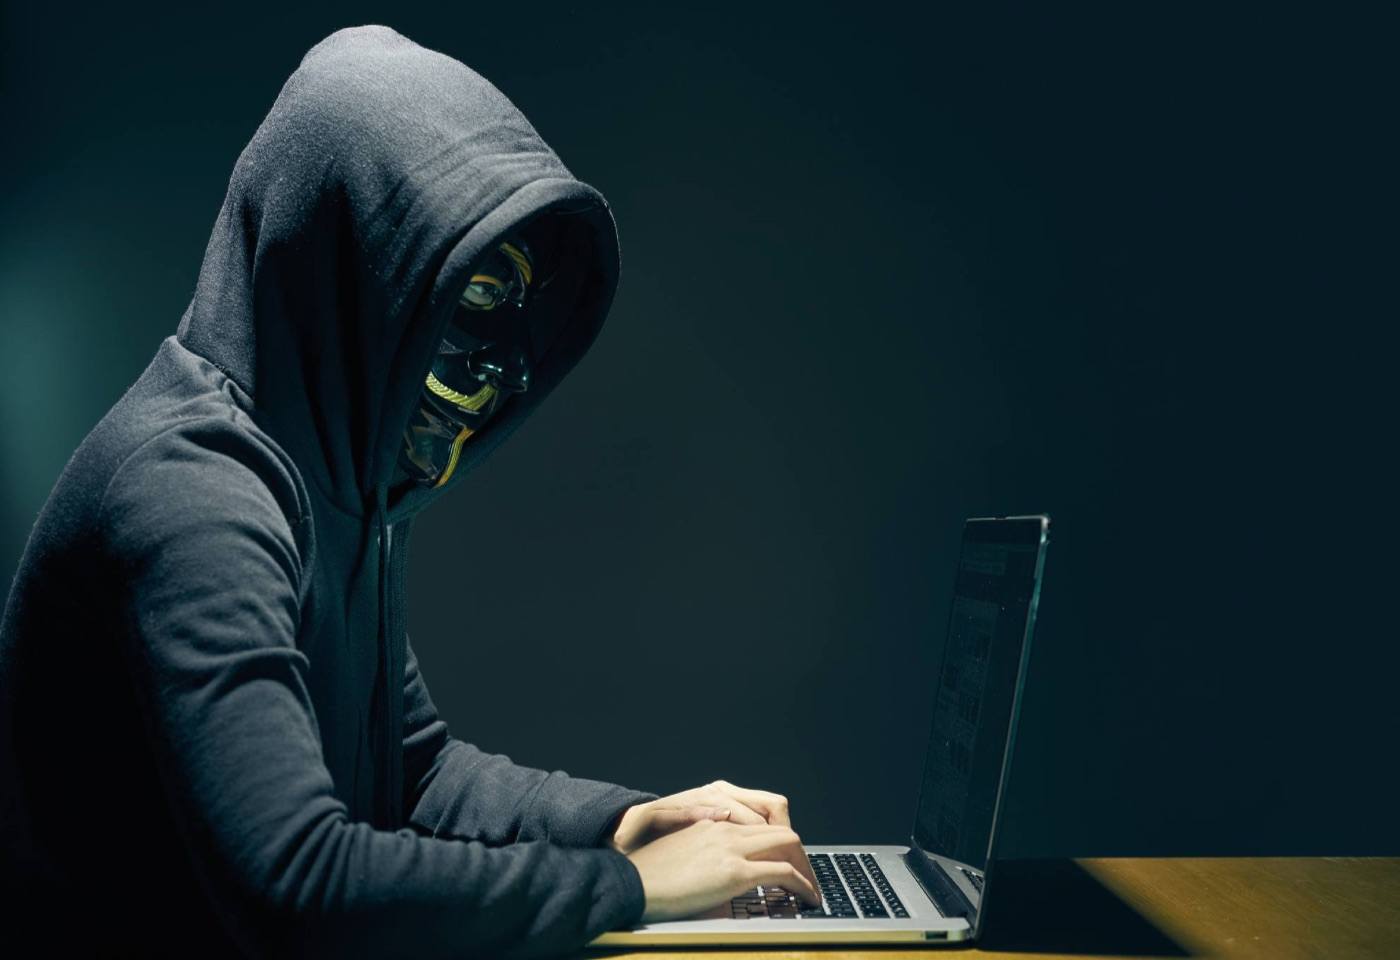 Hacker mũ đen là tội phạm mạng chuyên hack để làm chuyện xấu (Ảnh: Internet).